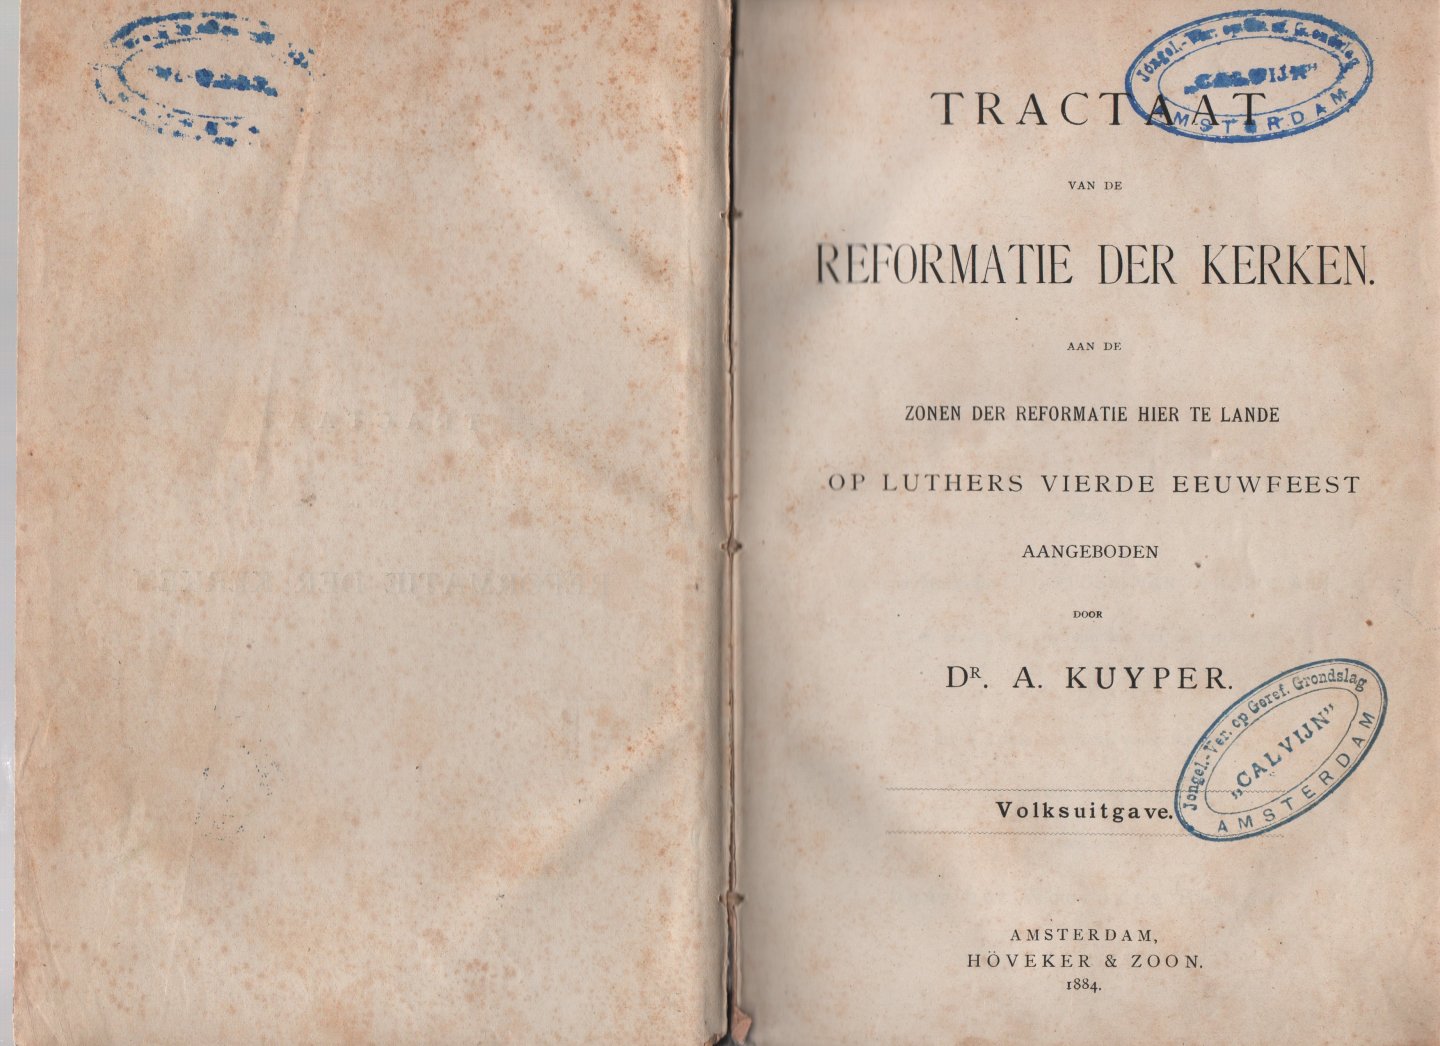 Kuyper, Dr. A. - Tractaat van de Reformatie der Kerken an de Zonen der Reformatie hier te lande op Luthers vierde eeuwfeest aangeboden door Dr. A. Luyper